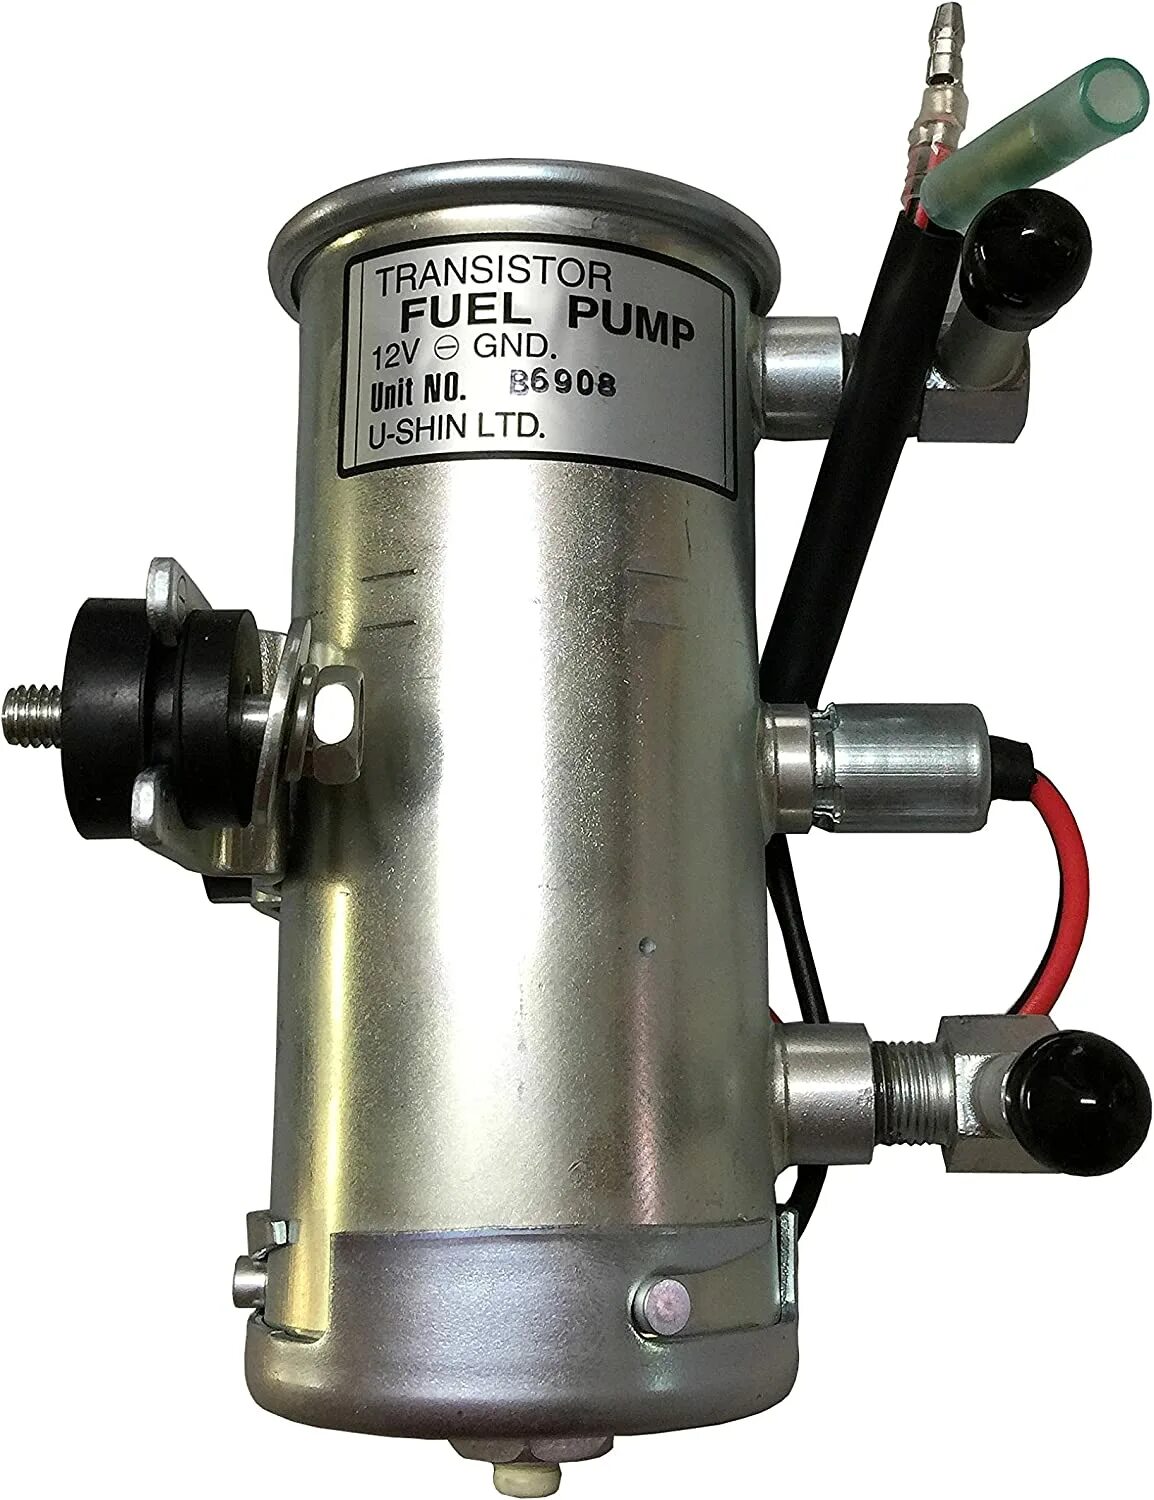 Насос топливный u-Shin fuel Pump b6908h. Fuel Pump 12v b6916. Transistor fuel Pump 12v a6907. Насос 24v GND Unit. Топливный насос 12v